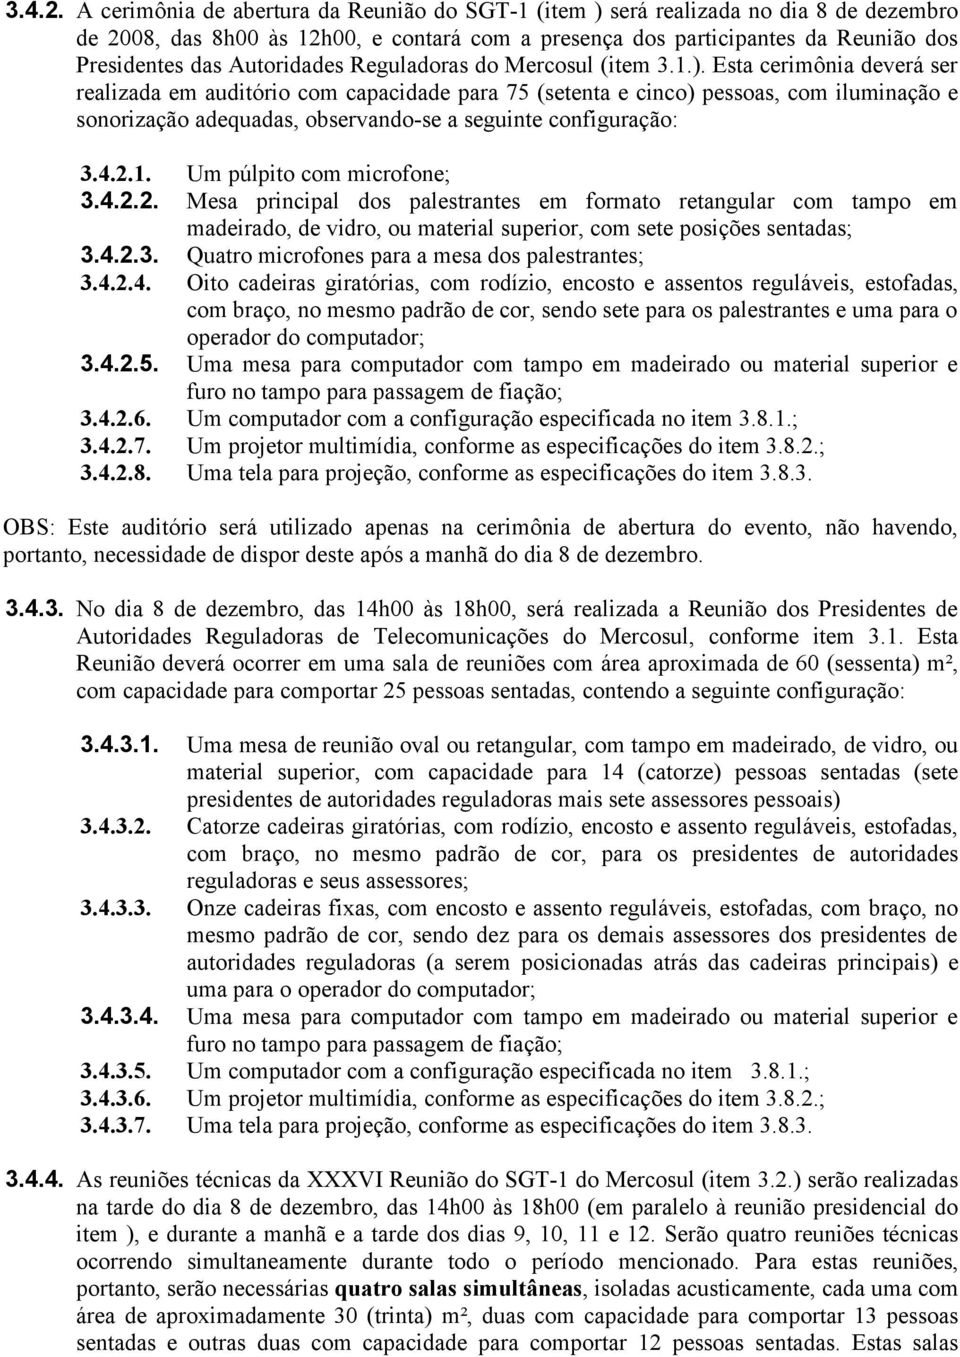 Autoridades Reguladoras do Mercosul (item 3.1.).